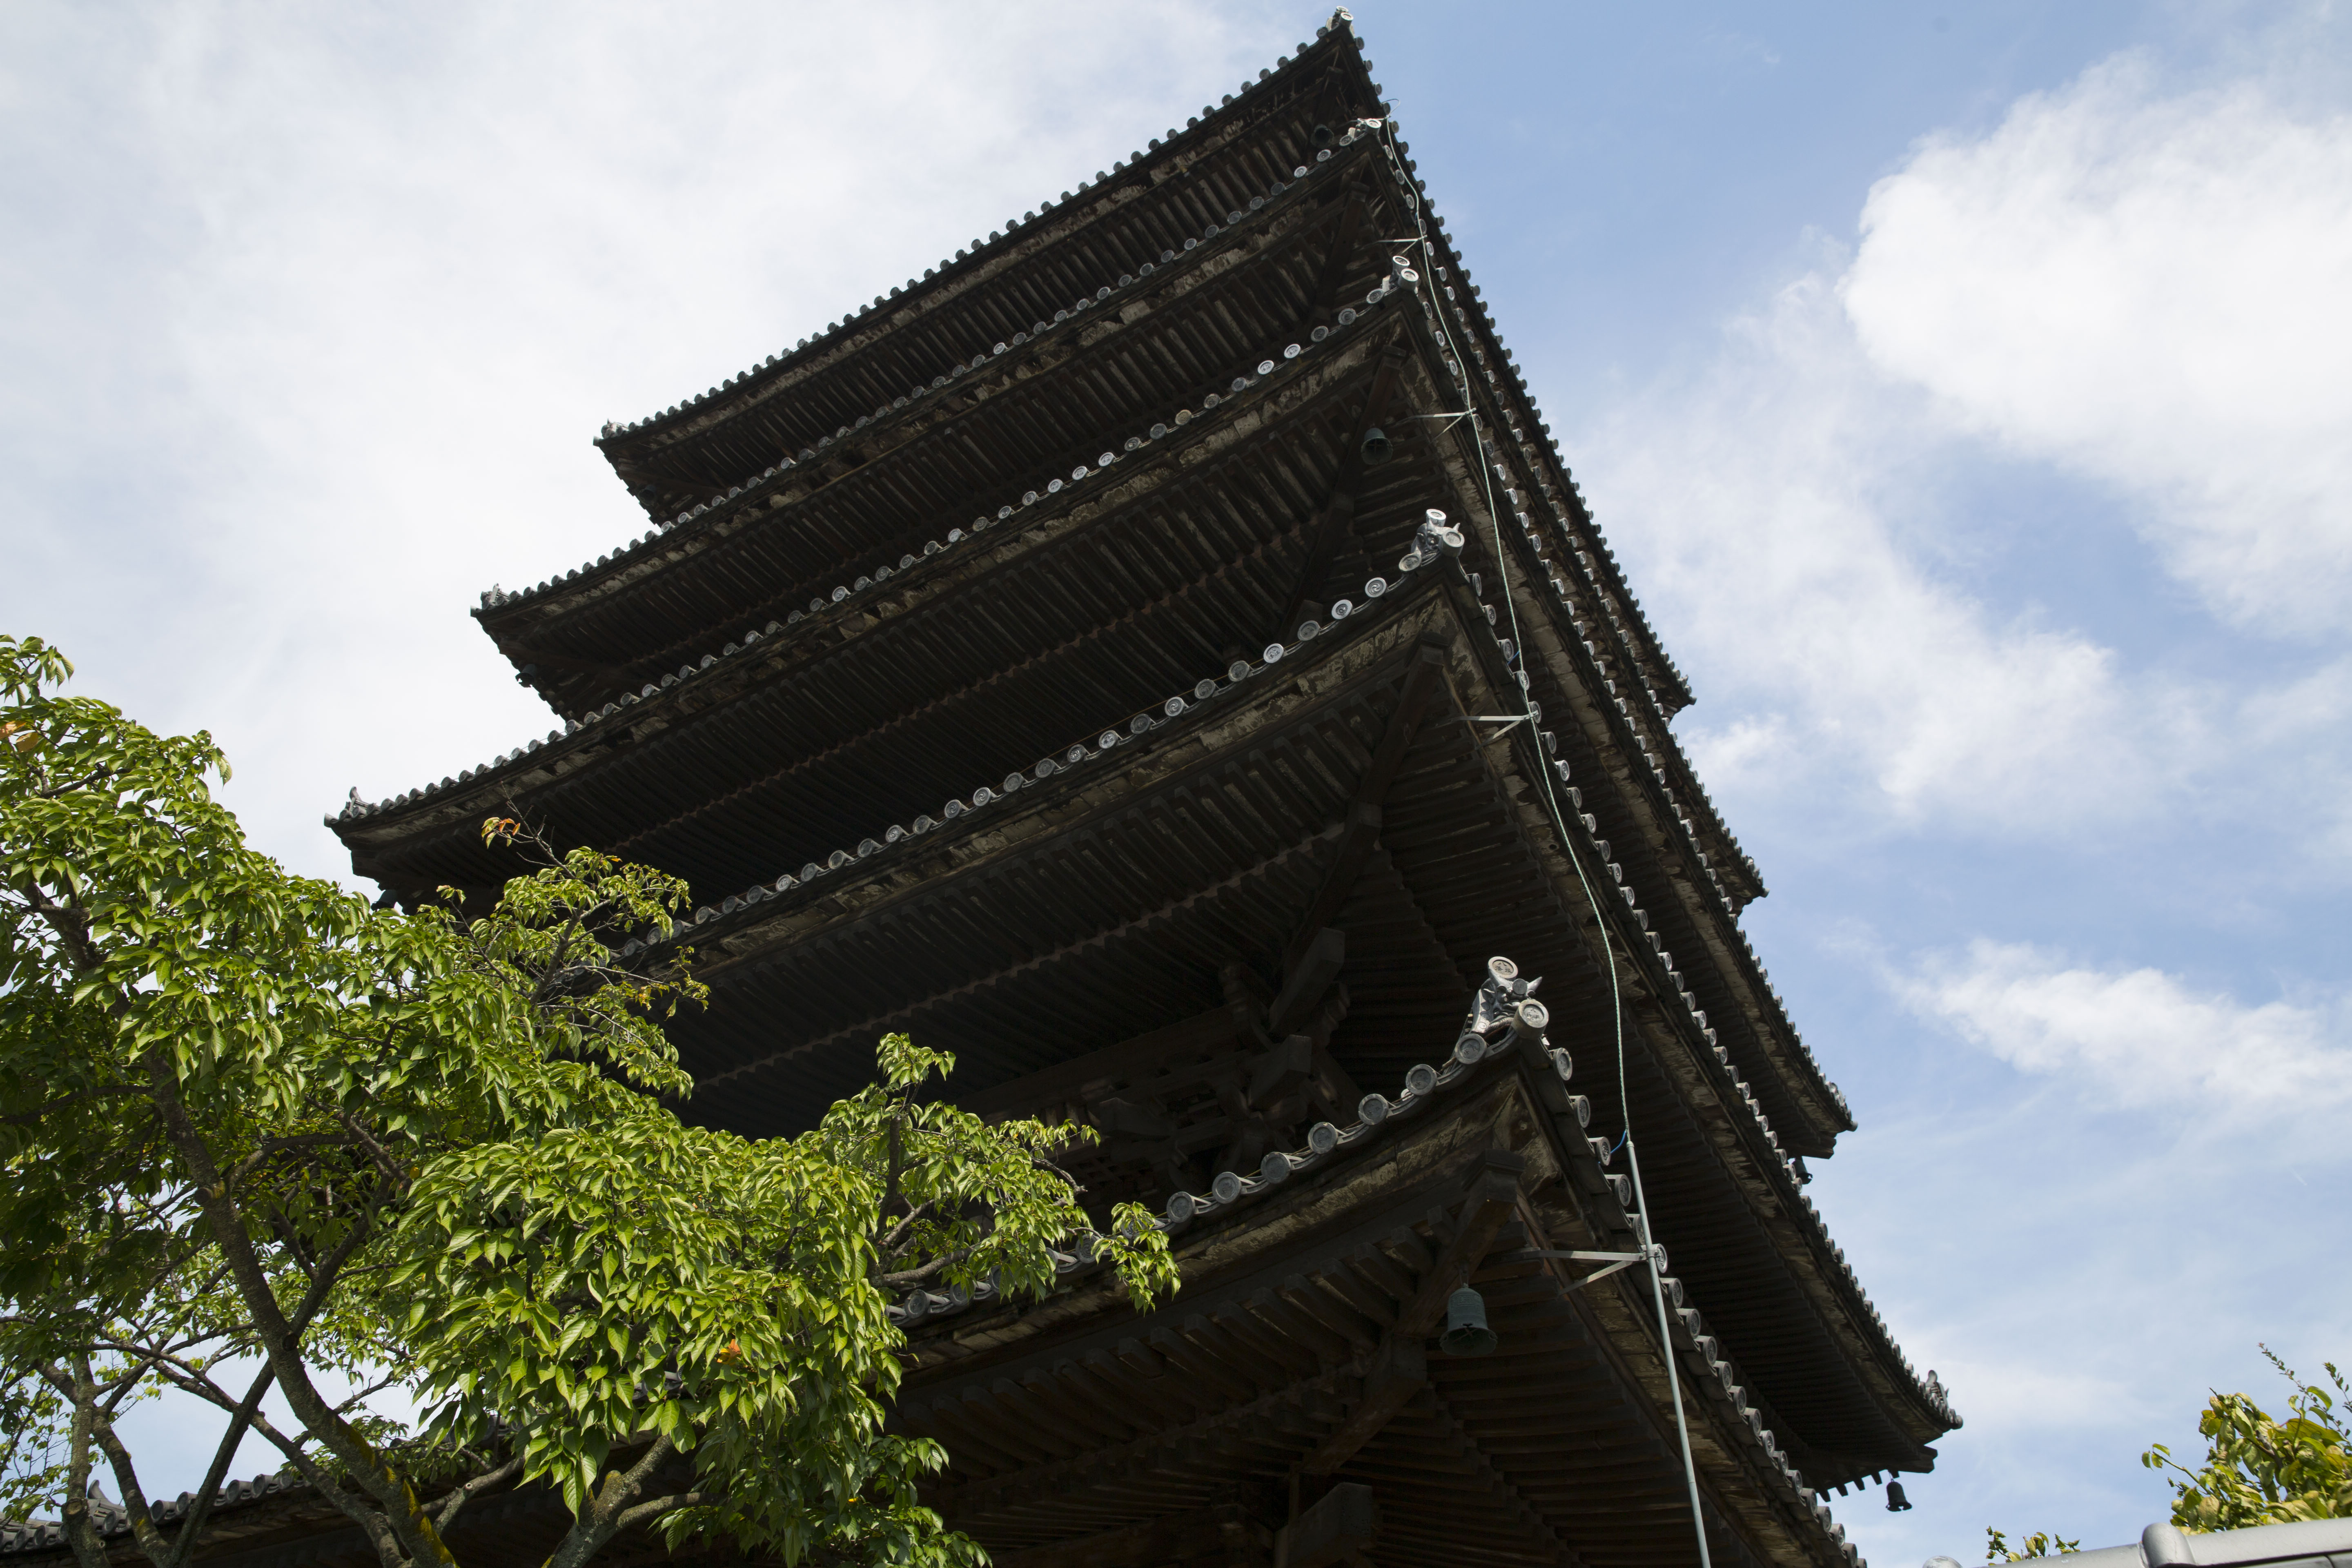 Pagoda, Gion near Kyoto